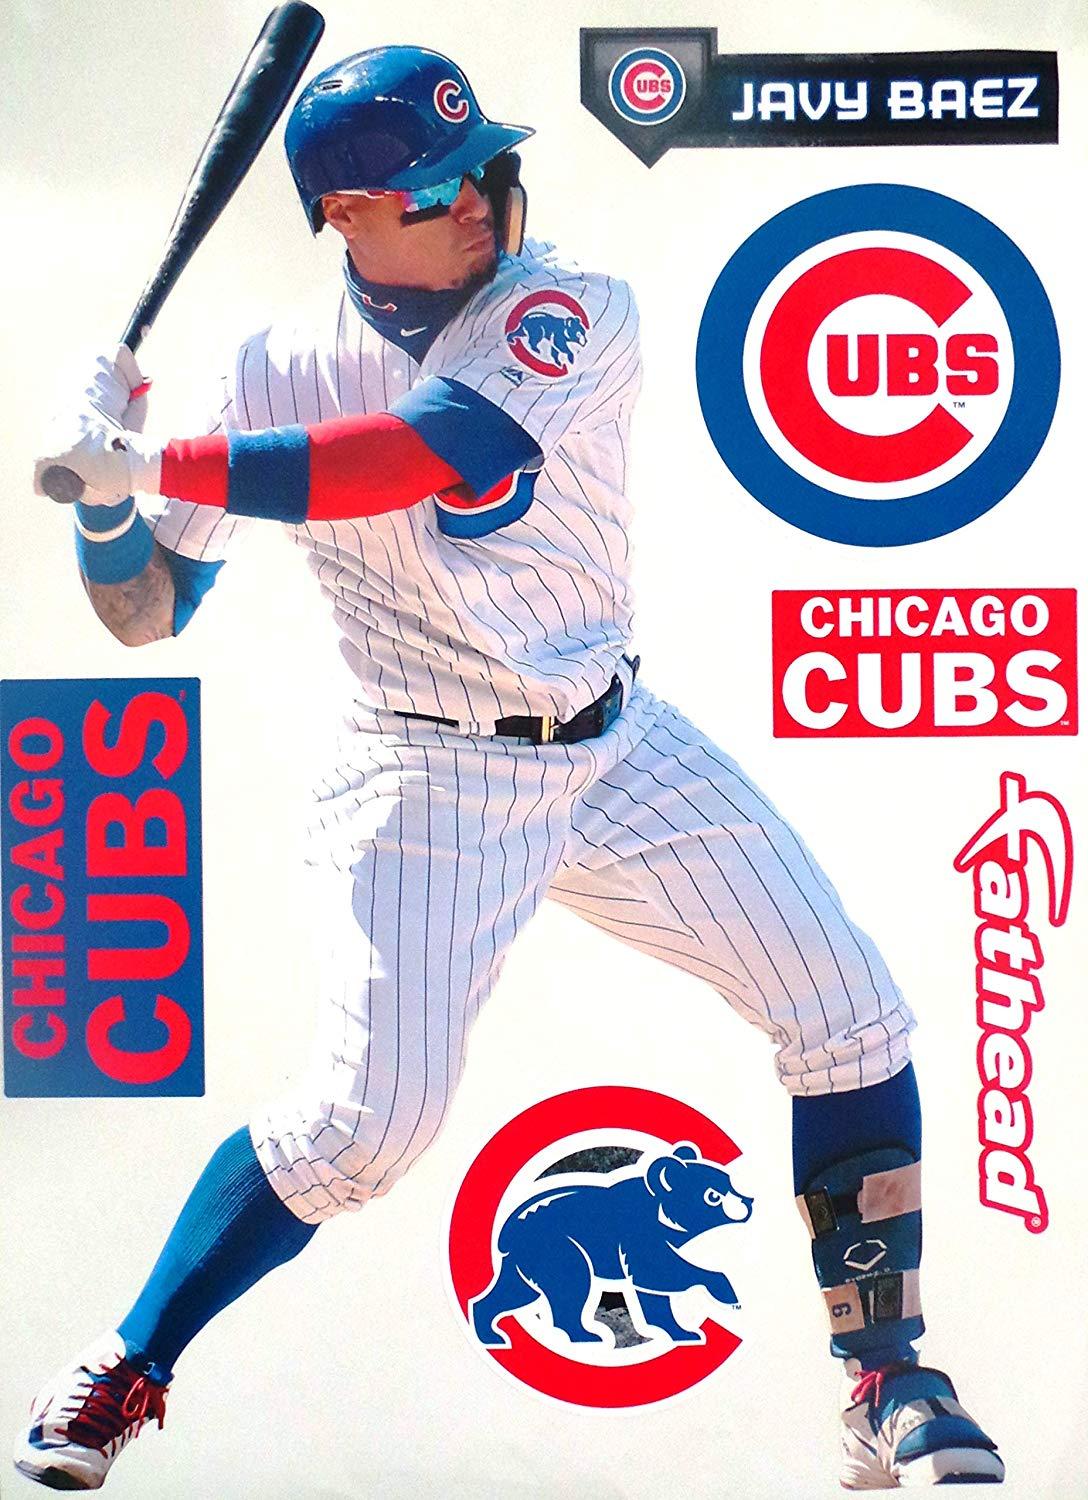 FATHEAD Javier Baez Graphic + Chicago Cubs Logo Set